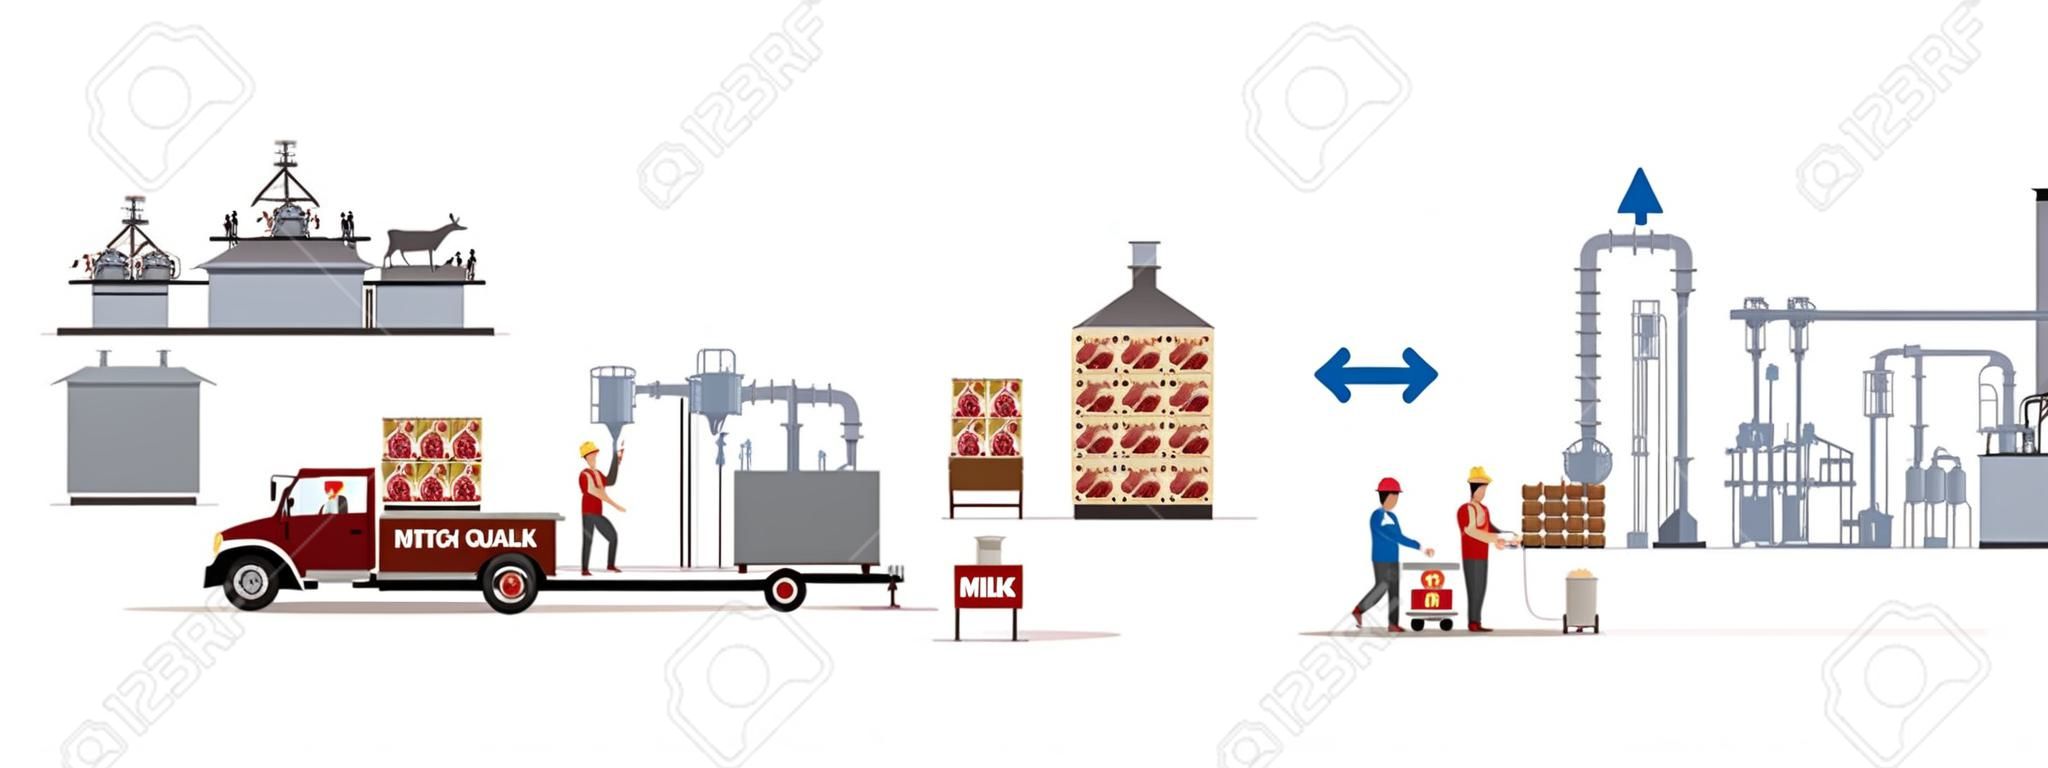 Usine de lait et de viande avec machines automatiques et ouvriers. Illustration vectorielle.